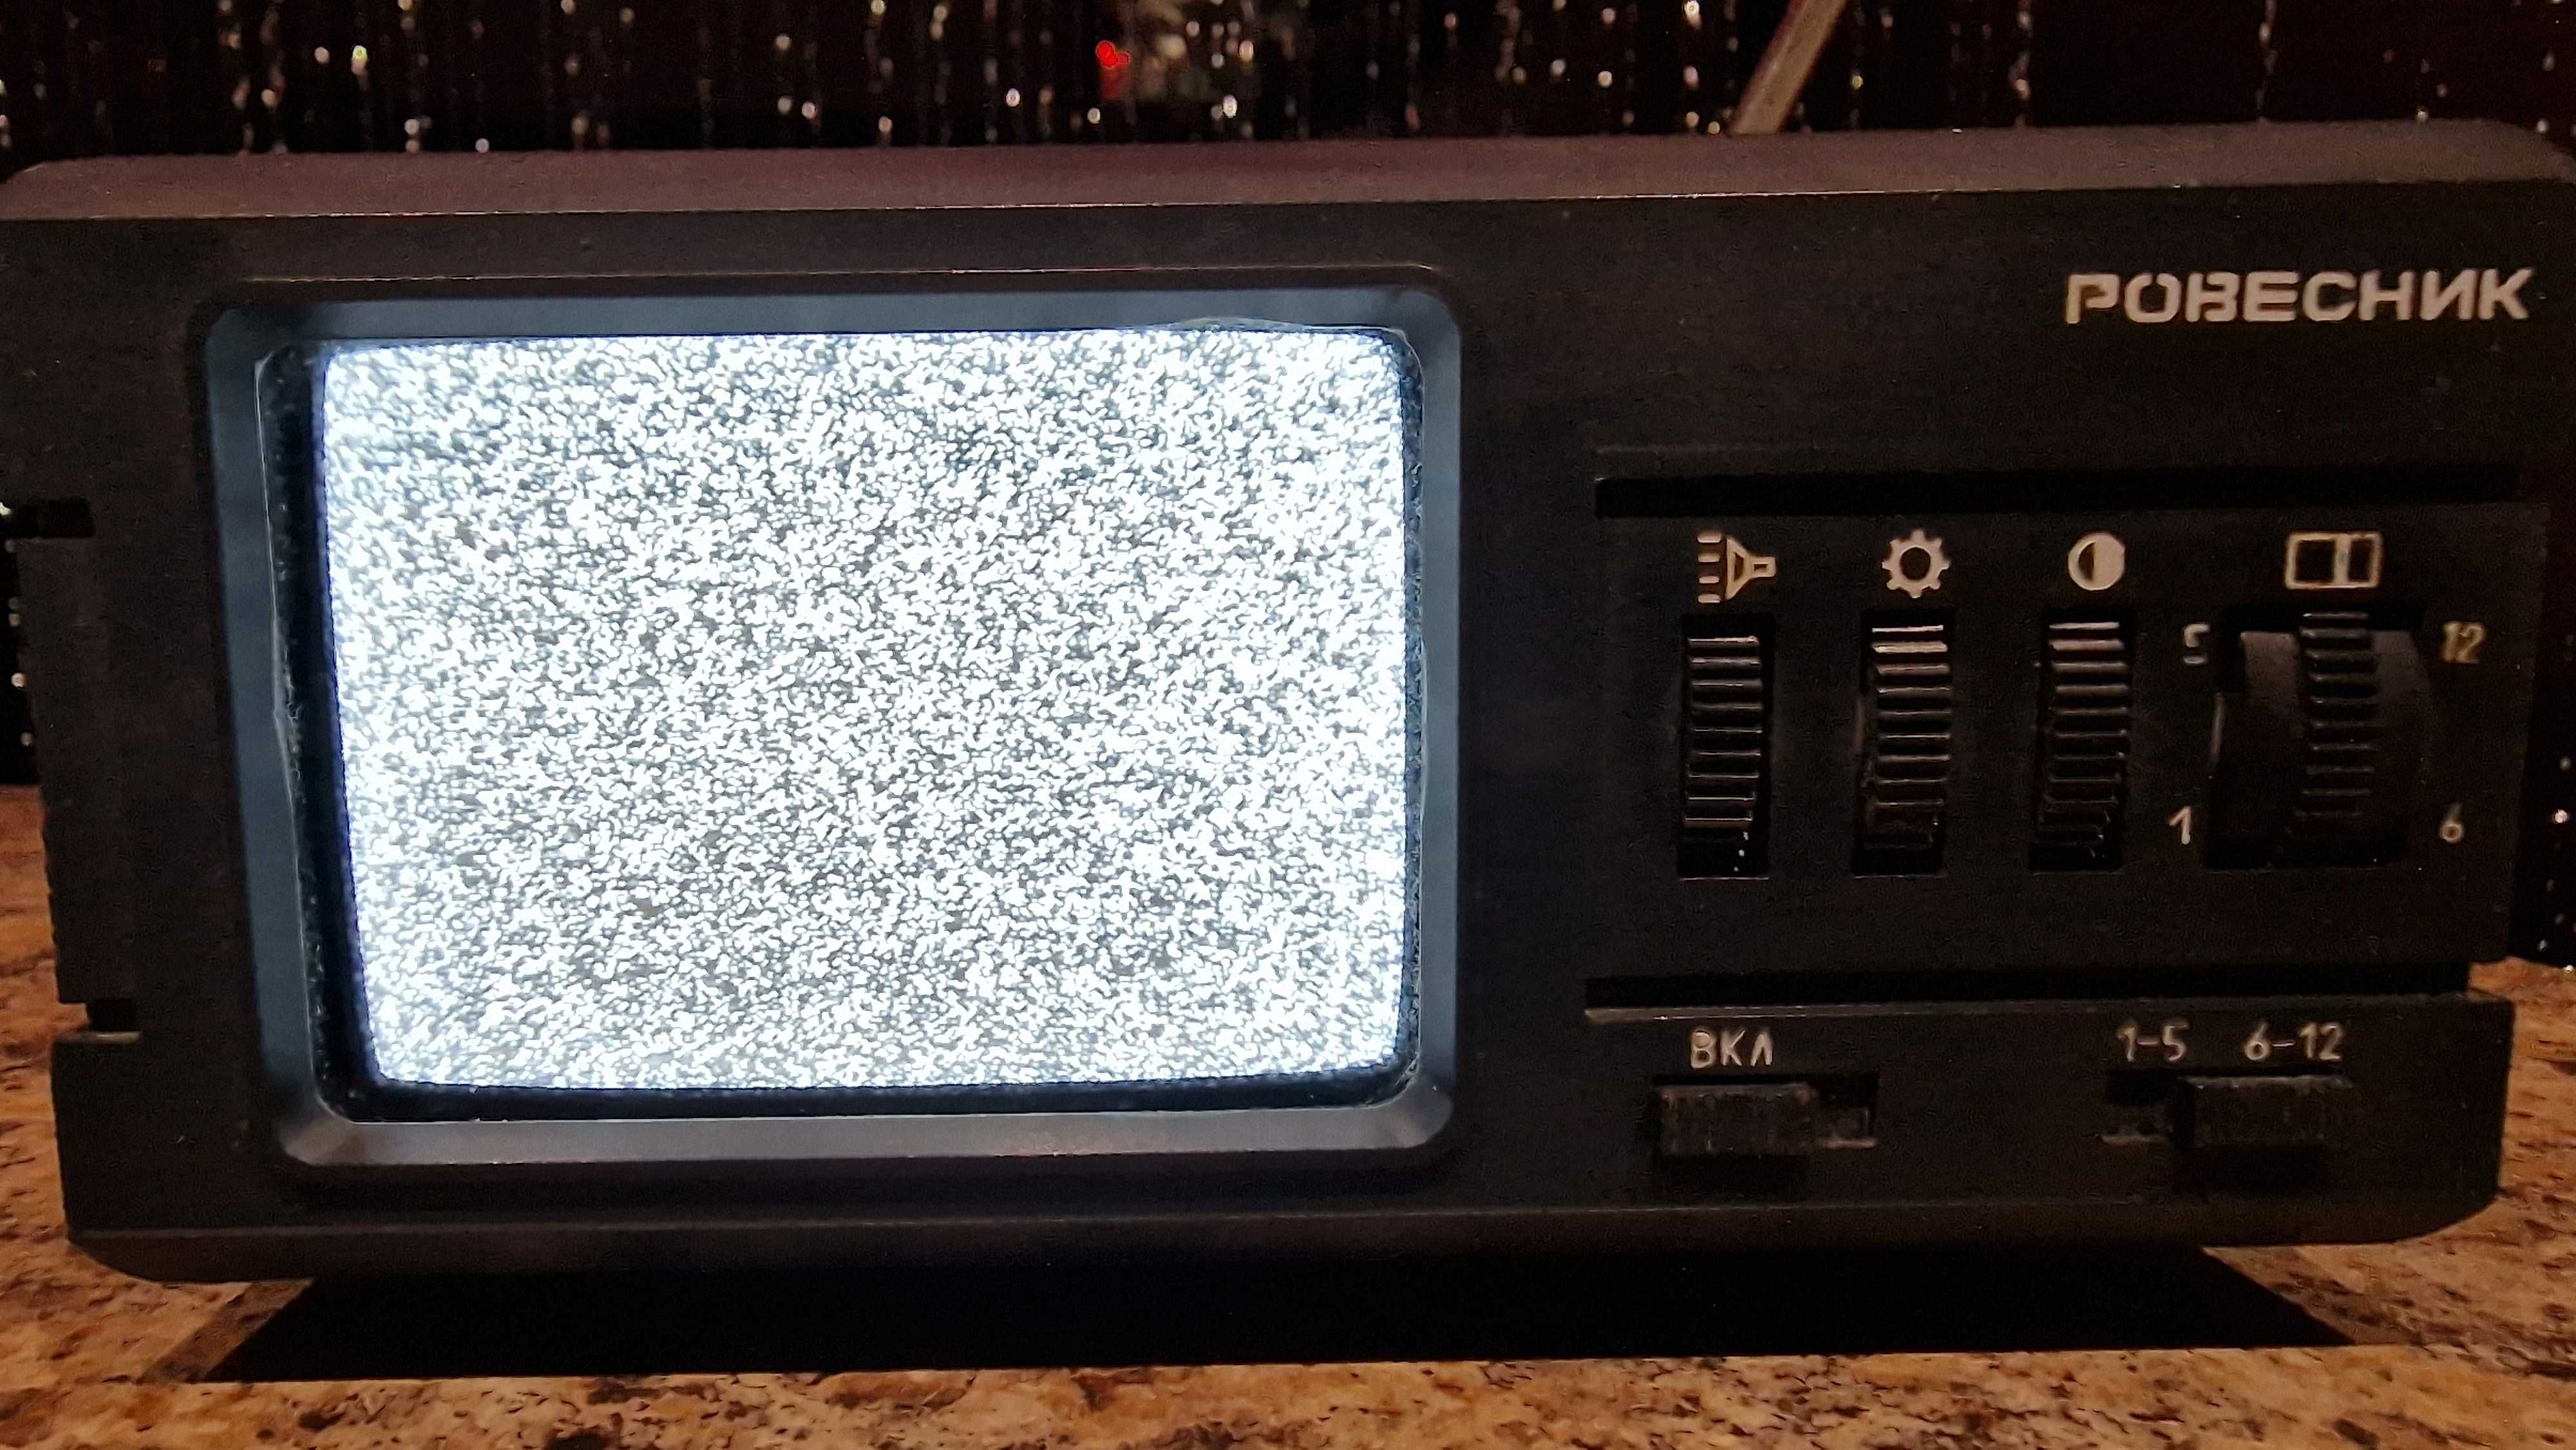 Самый маленький телевизор СССР Ровесник